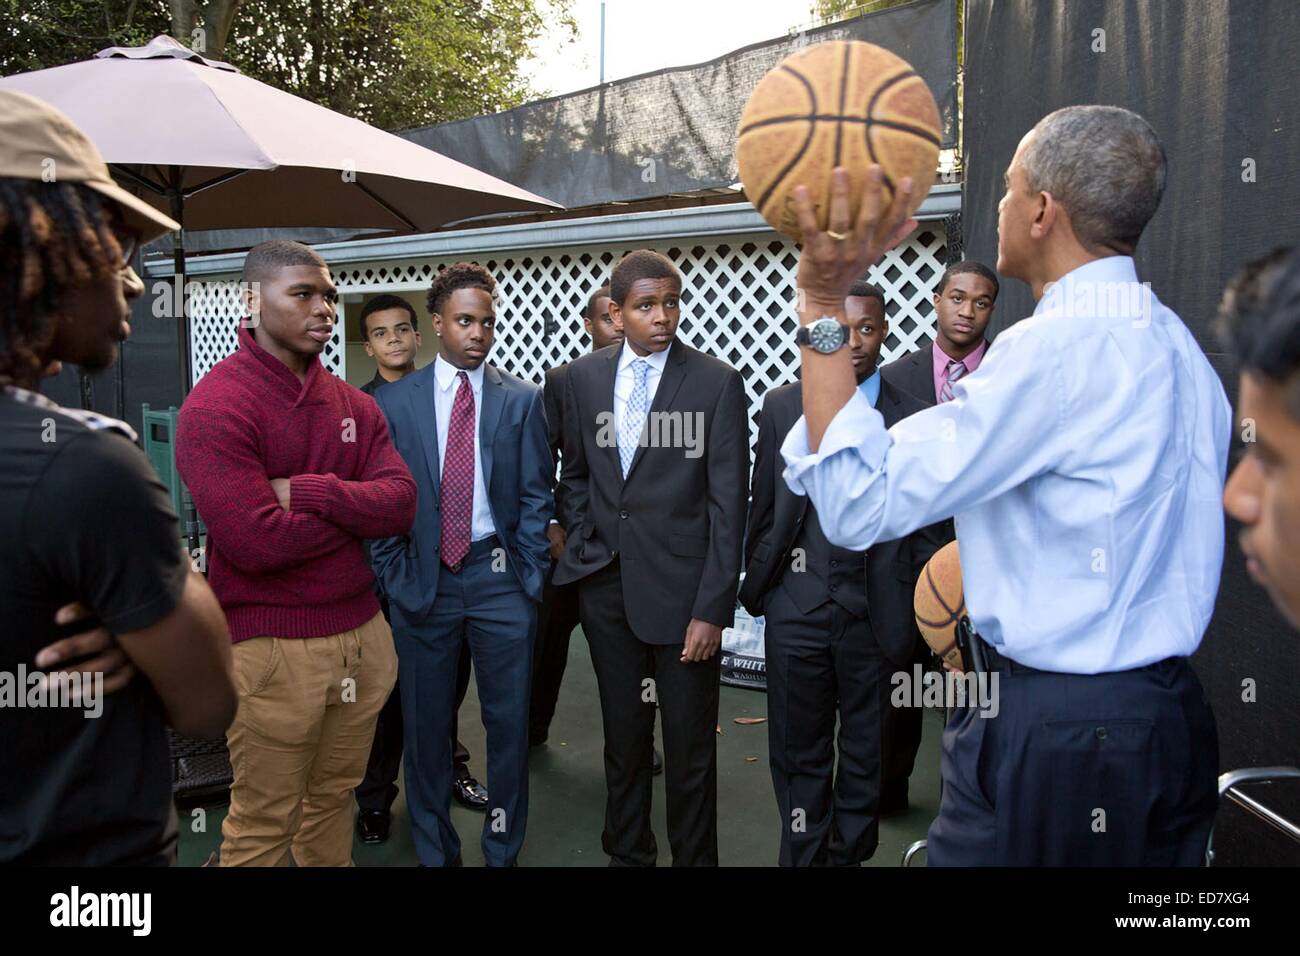 Le président américain Barack Obama s'adresse à un groupe de personnes sur le terrain de basket à la Maison Blanche, le 14 octobre 2014 à Washington, DC. Banque D'Images